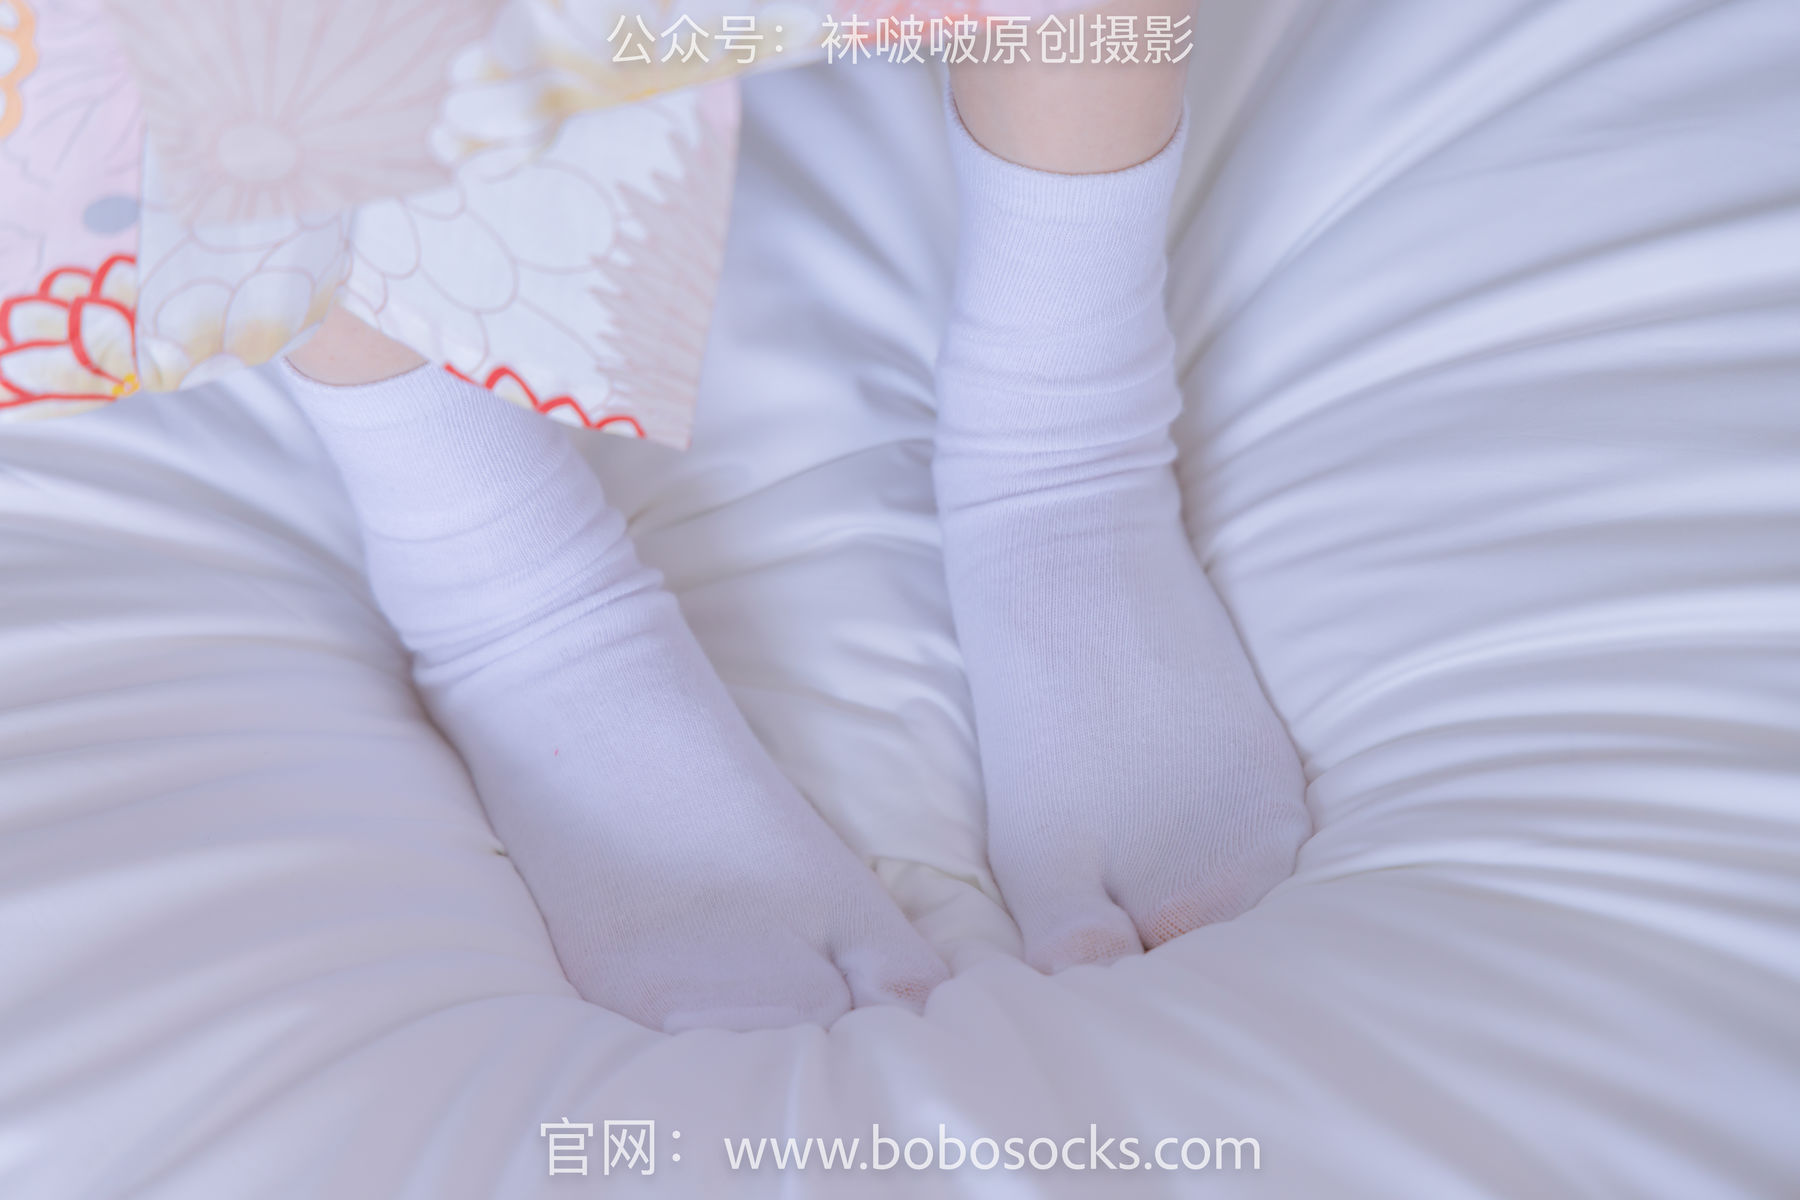 BoBoSocks袜啵啵 No.137 稚予-木屐、分指白棉袜、裸足、和风浴衣/(170P)